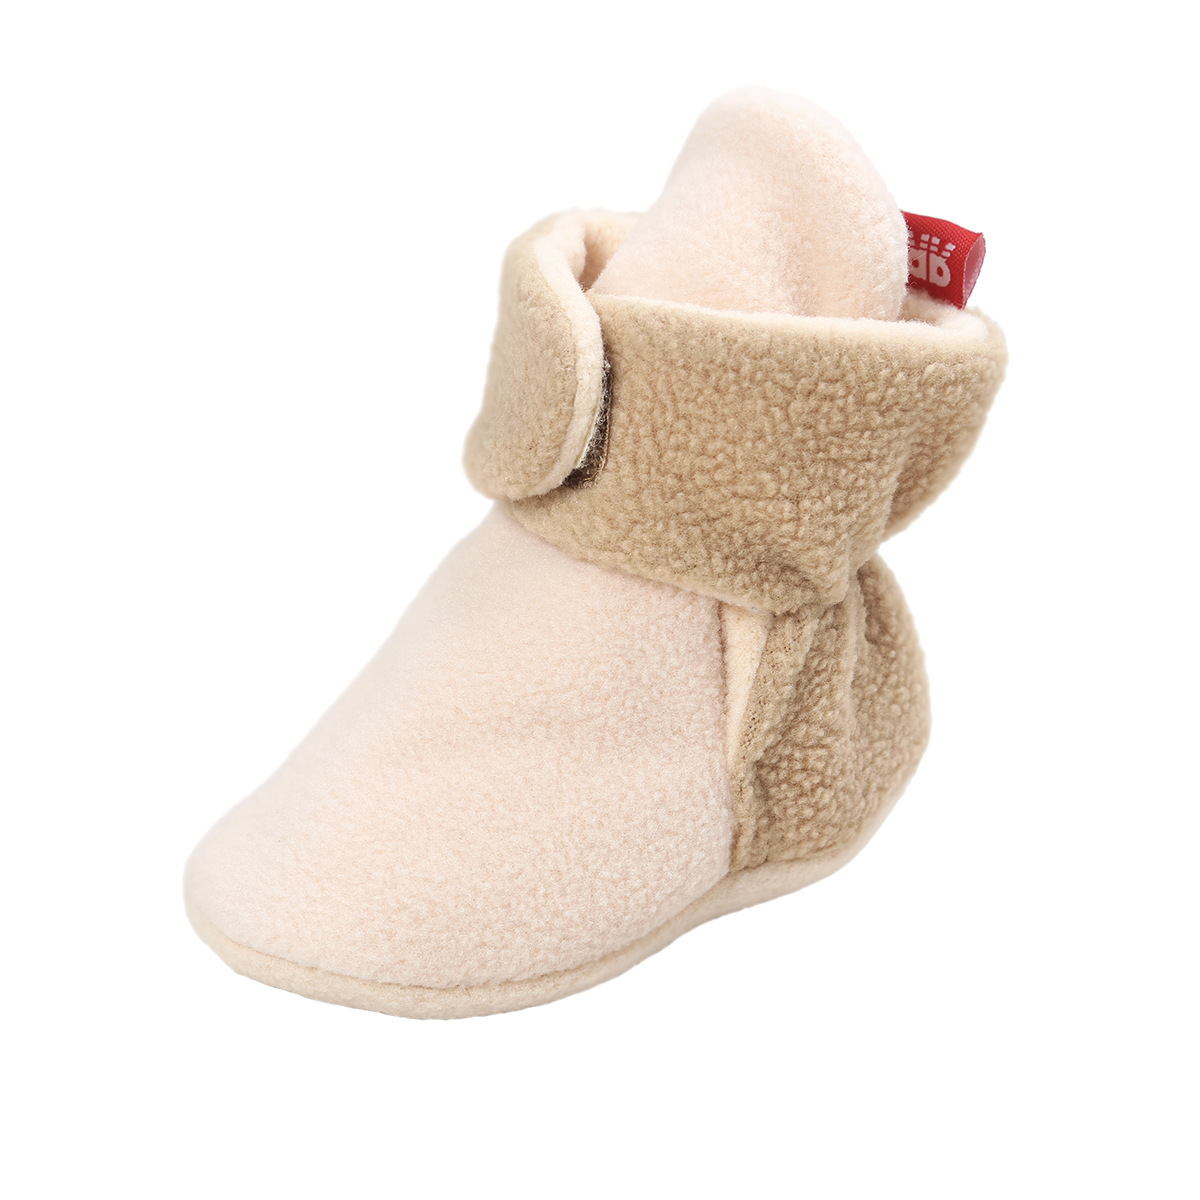 Chaussures bébé en coton - Ref 3436821 Image 52